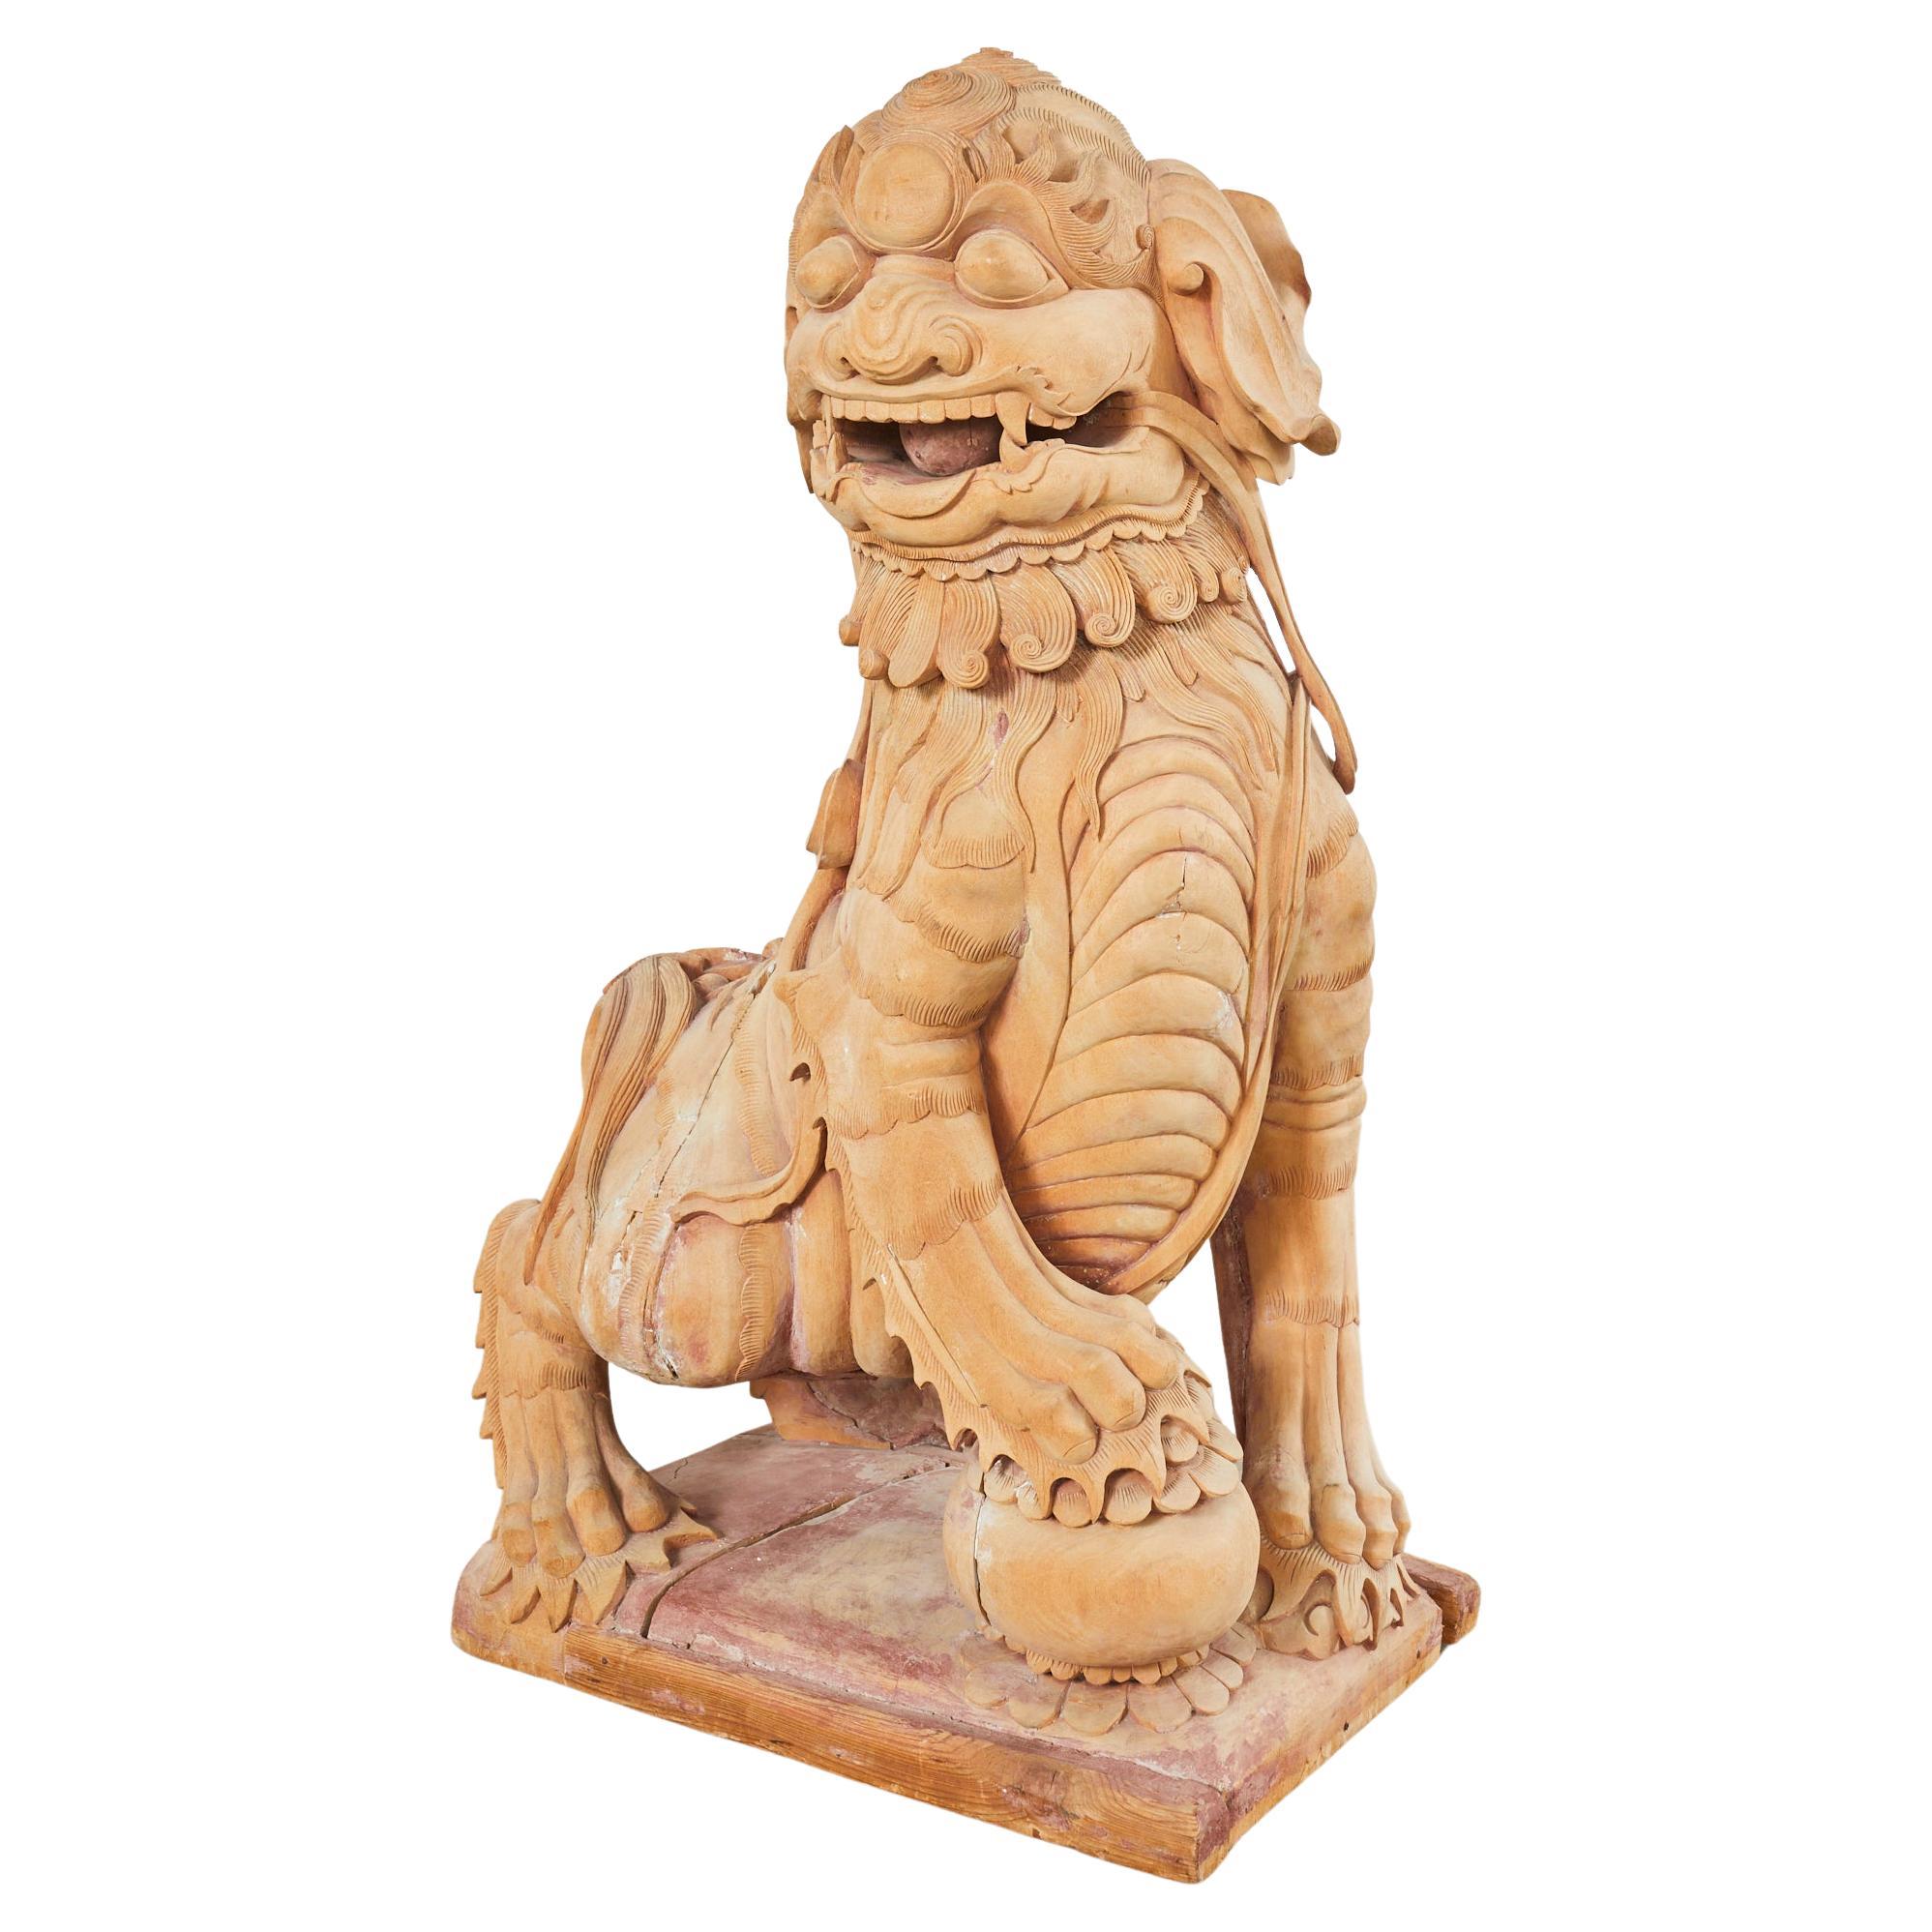 Monumentale chinesische geschnitzte Foo-Hunde-Löwen- Tempel-Skulptur aus Holz